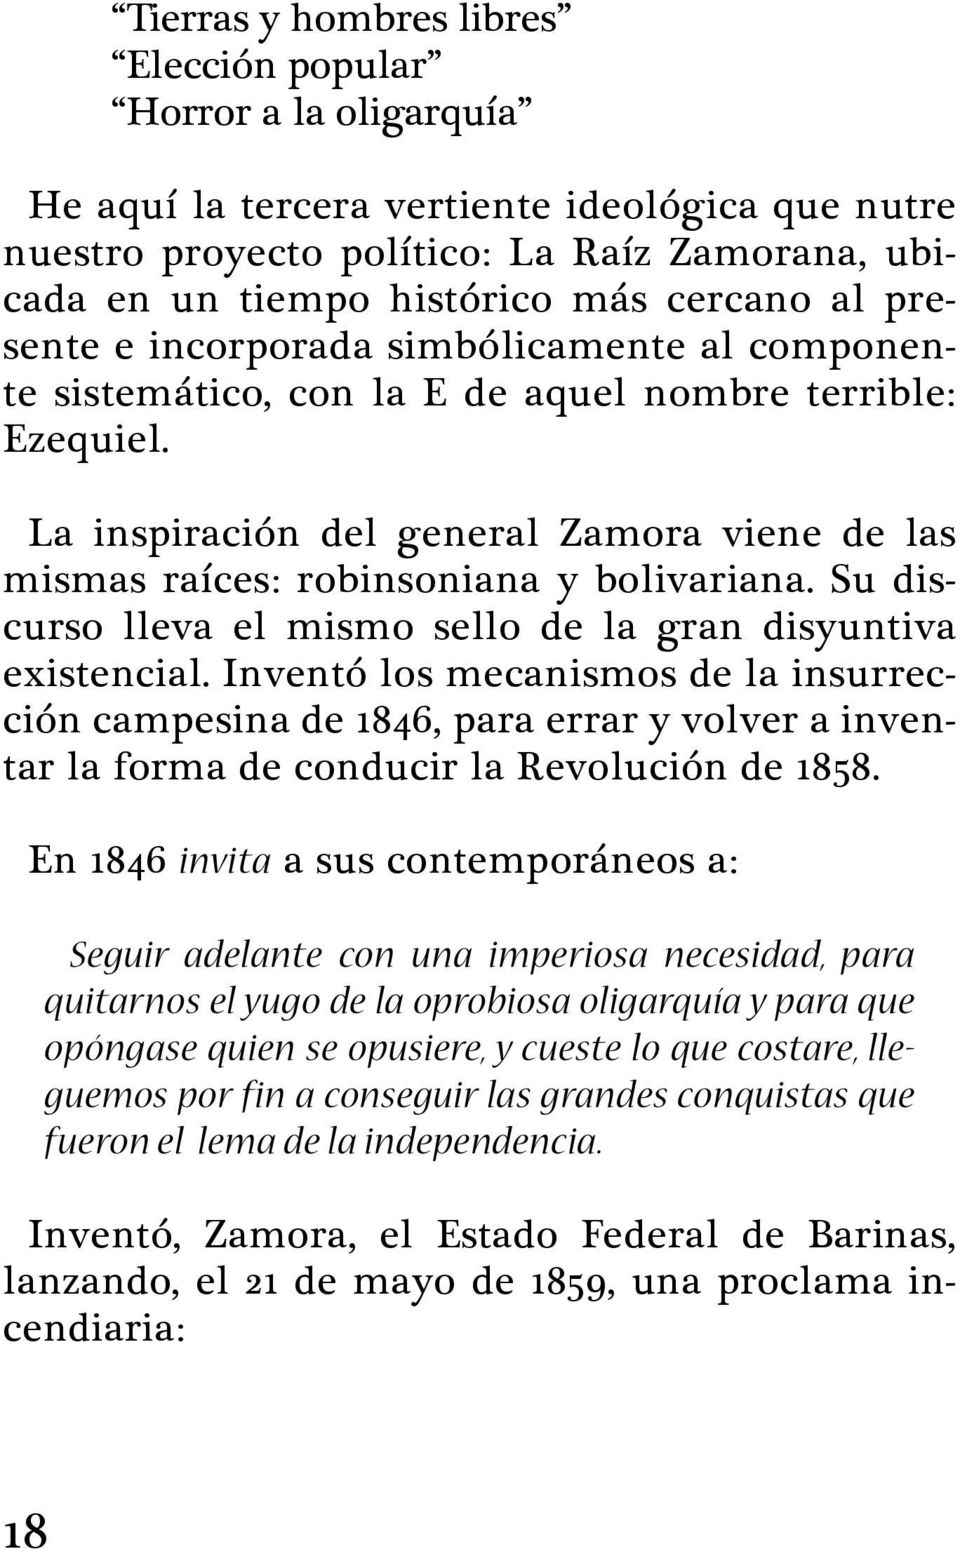 La inspiración del general Zamora viene de las mismas raíces: robinsoniana y bolivariana. Su discurso lleva el mismo sello de la gran disyuntiva existencial.